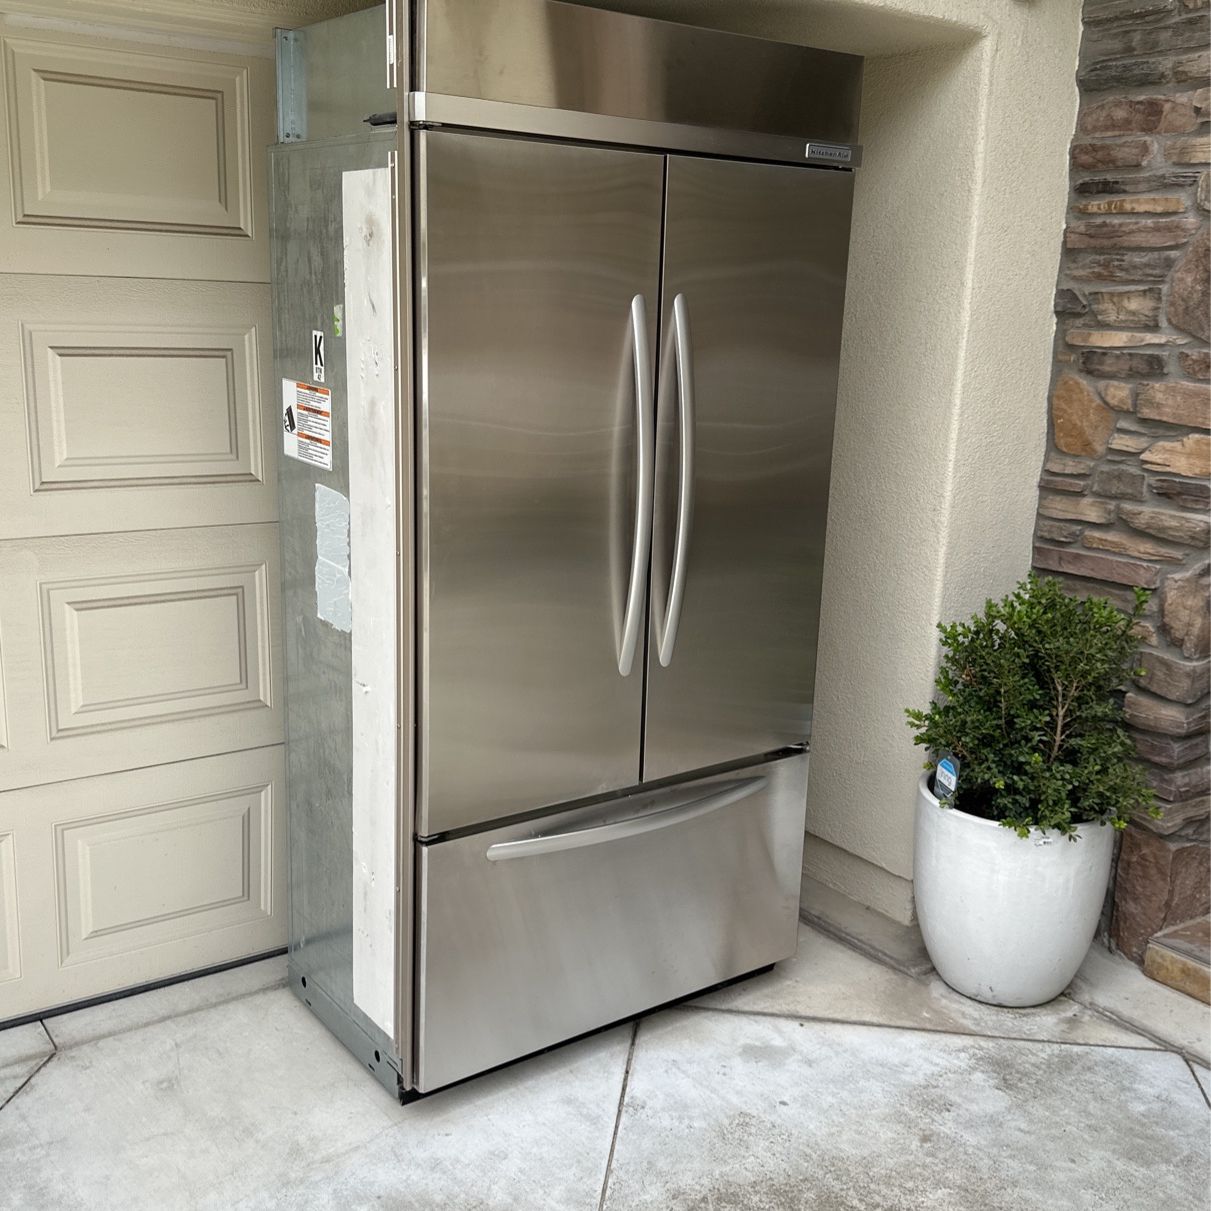 42” Built In Refrigerator-Kitchen Aid